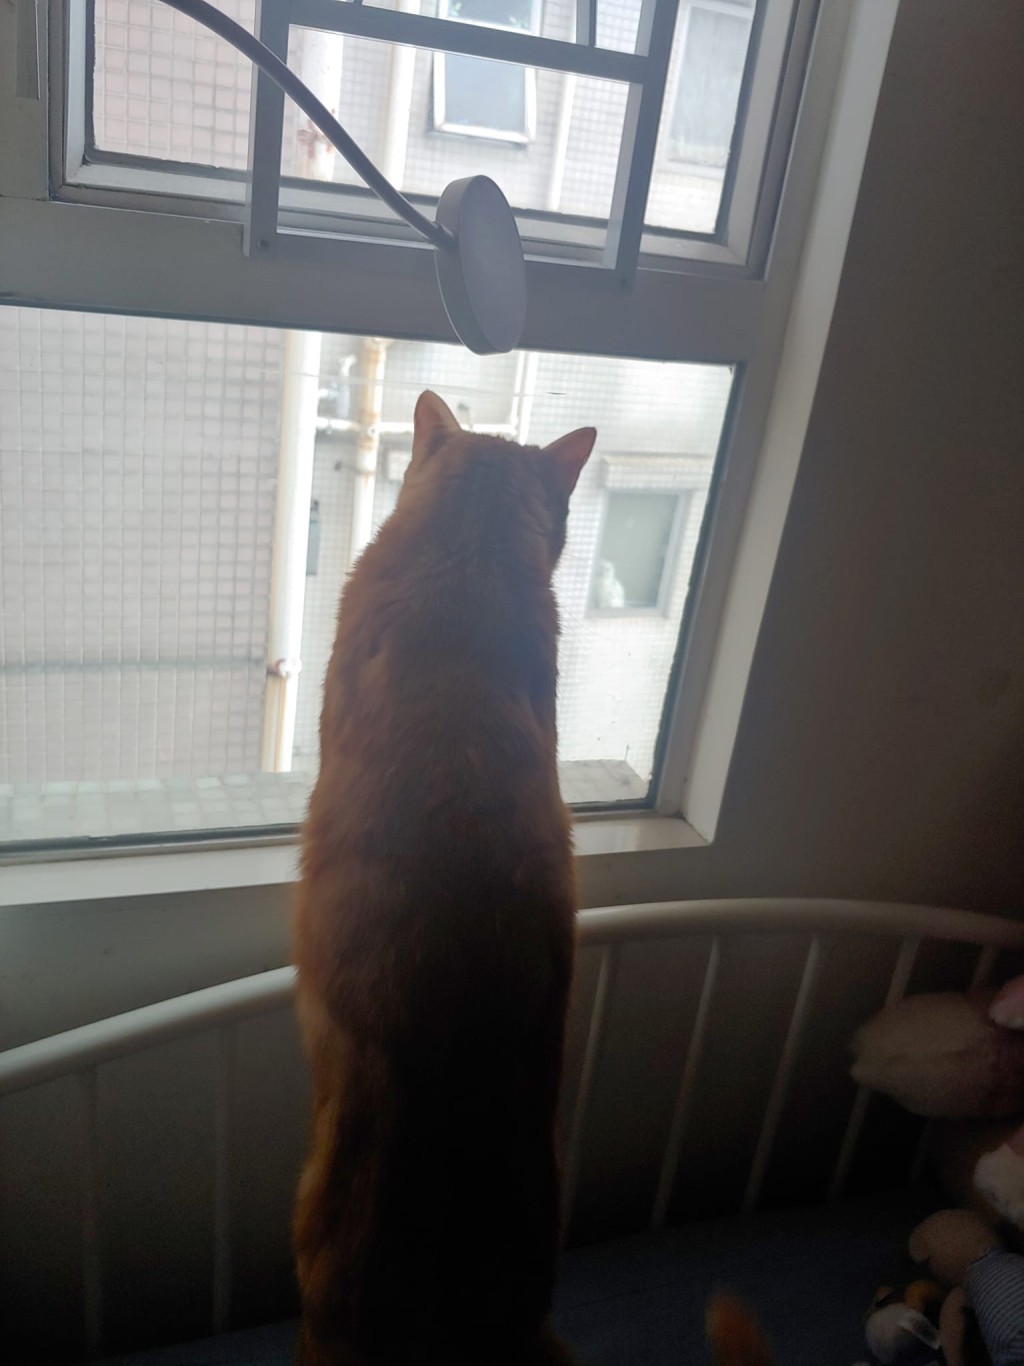 橘猫带著心急的背影凭窗远眺。网上截图